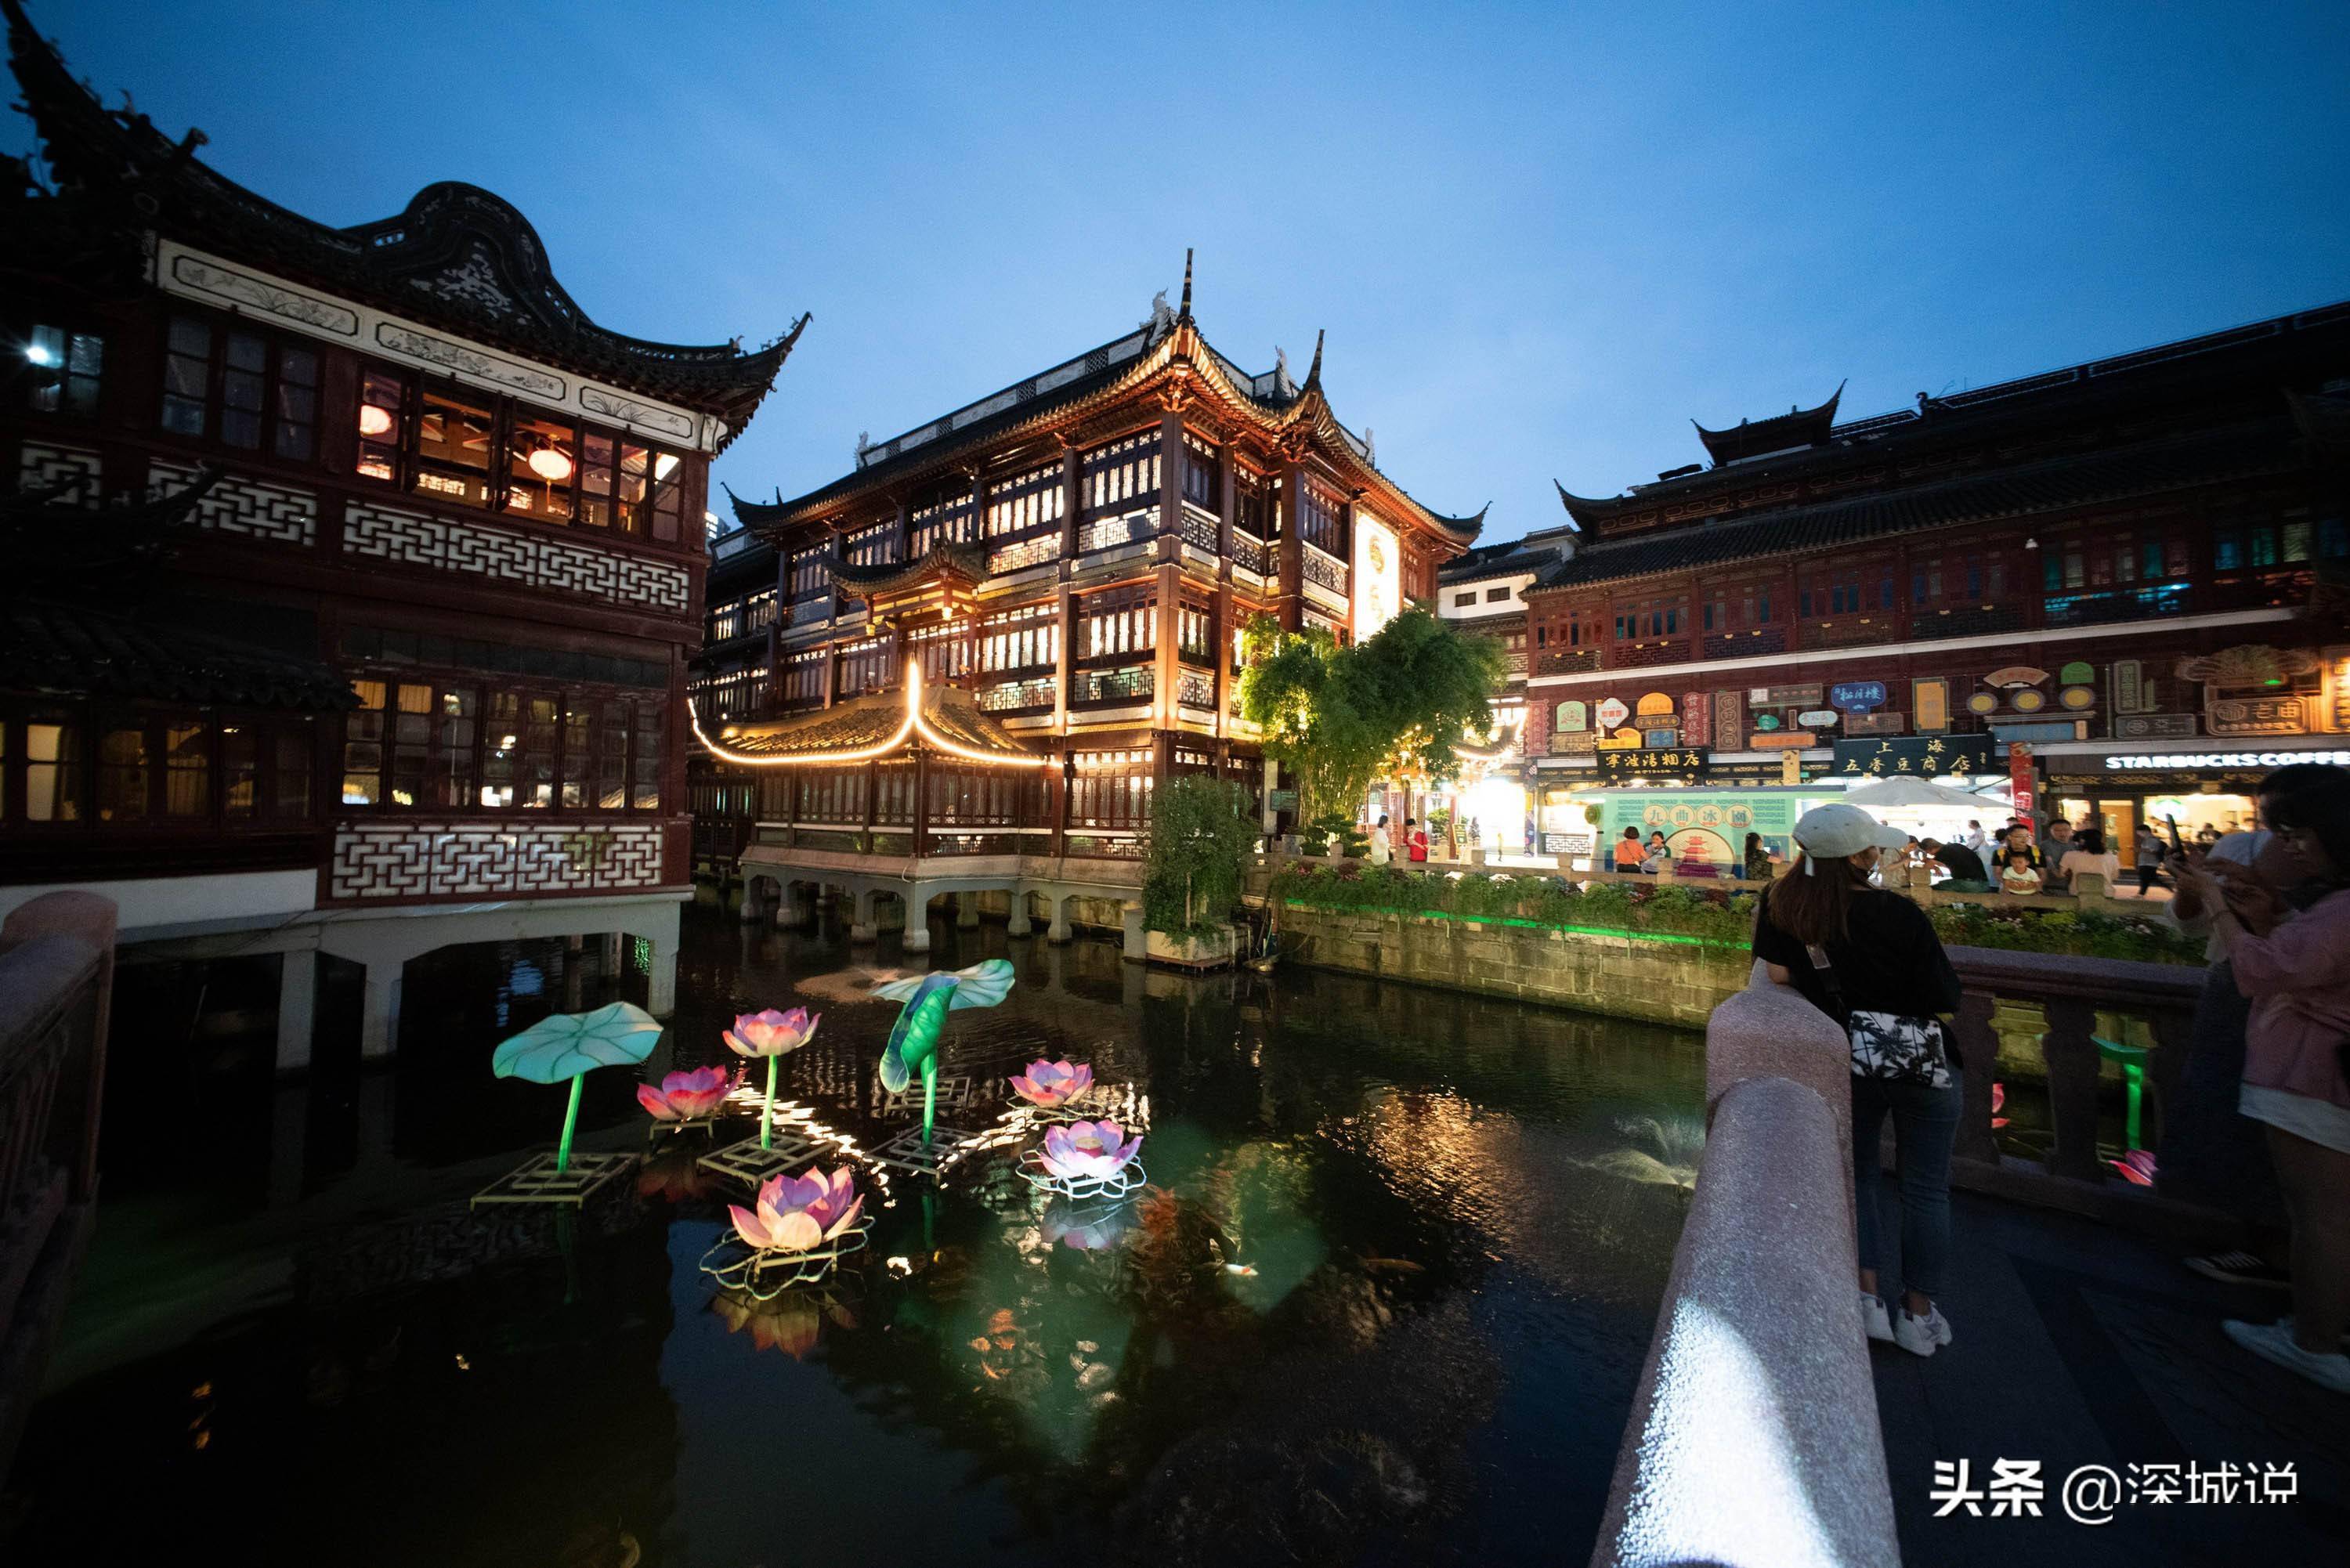 豫园 - 场所详情 -上海市文旅推广网-上海市文化和旅游局 提供专业文化和旅游及会展信息资讯